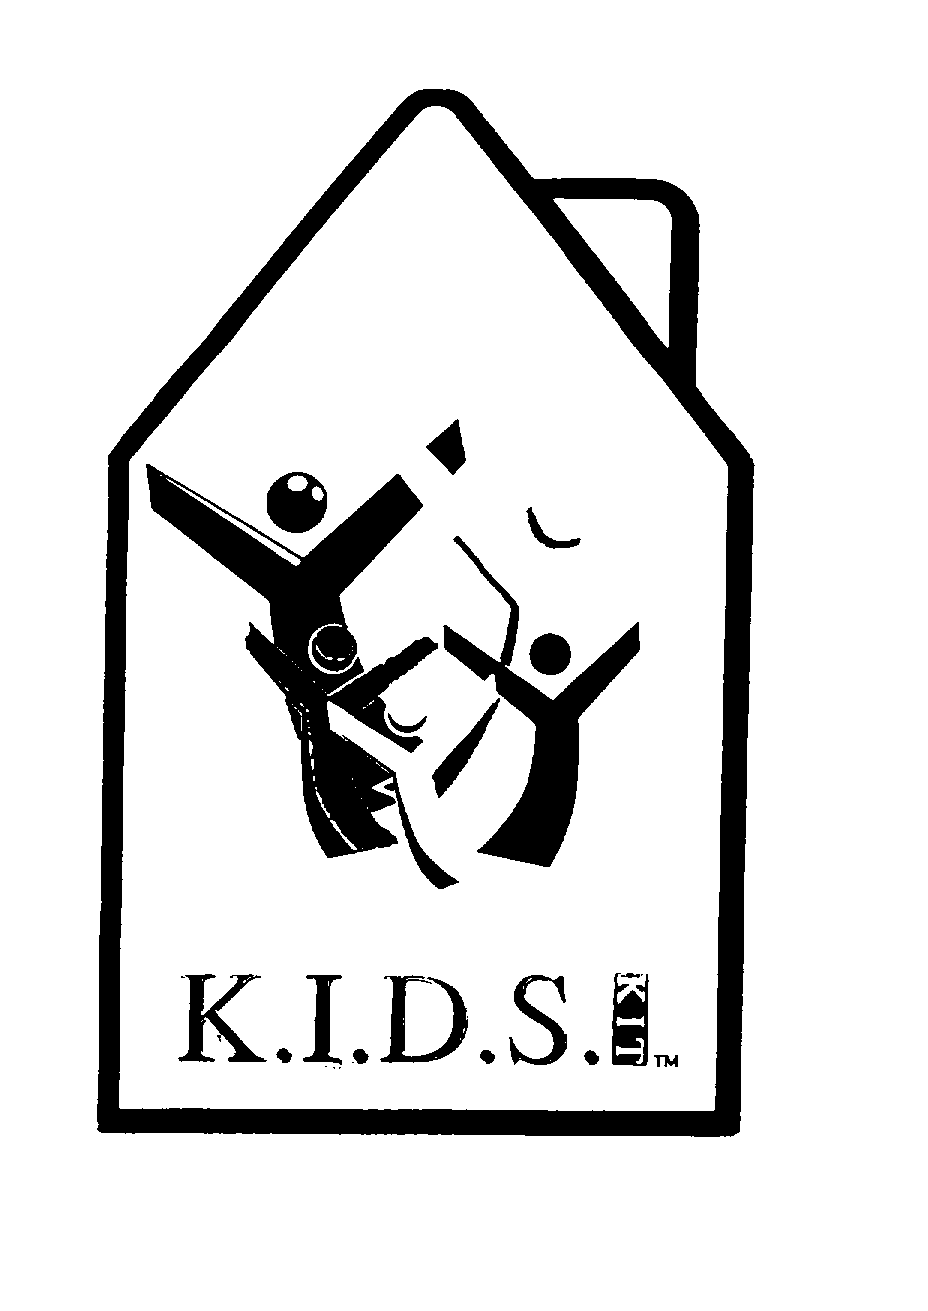 K.I.D.S.